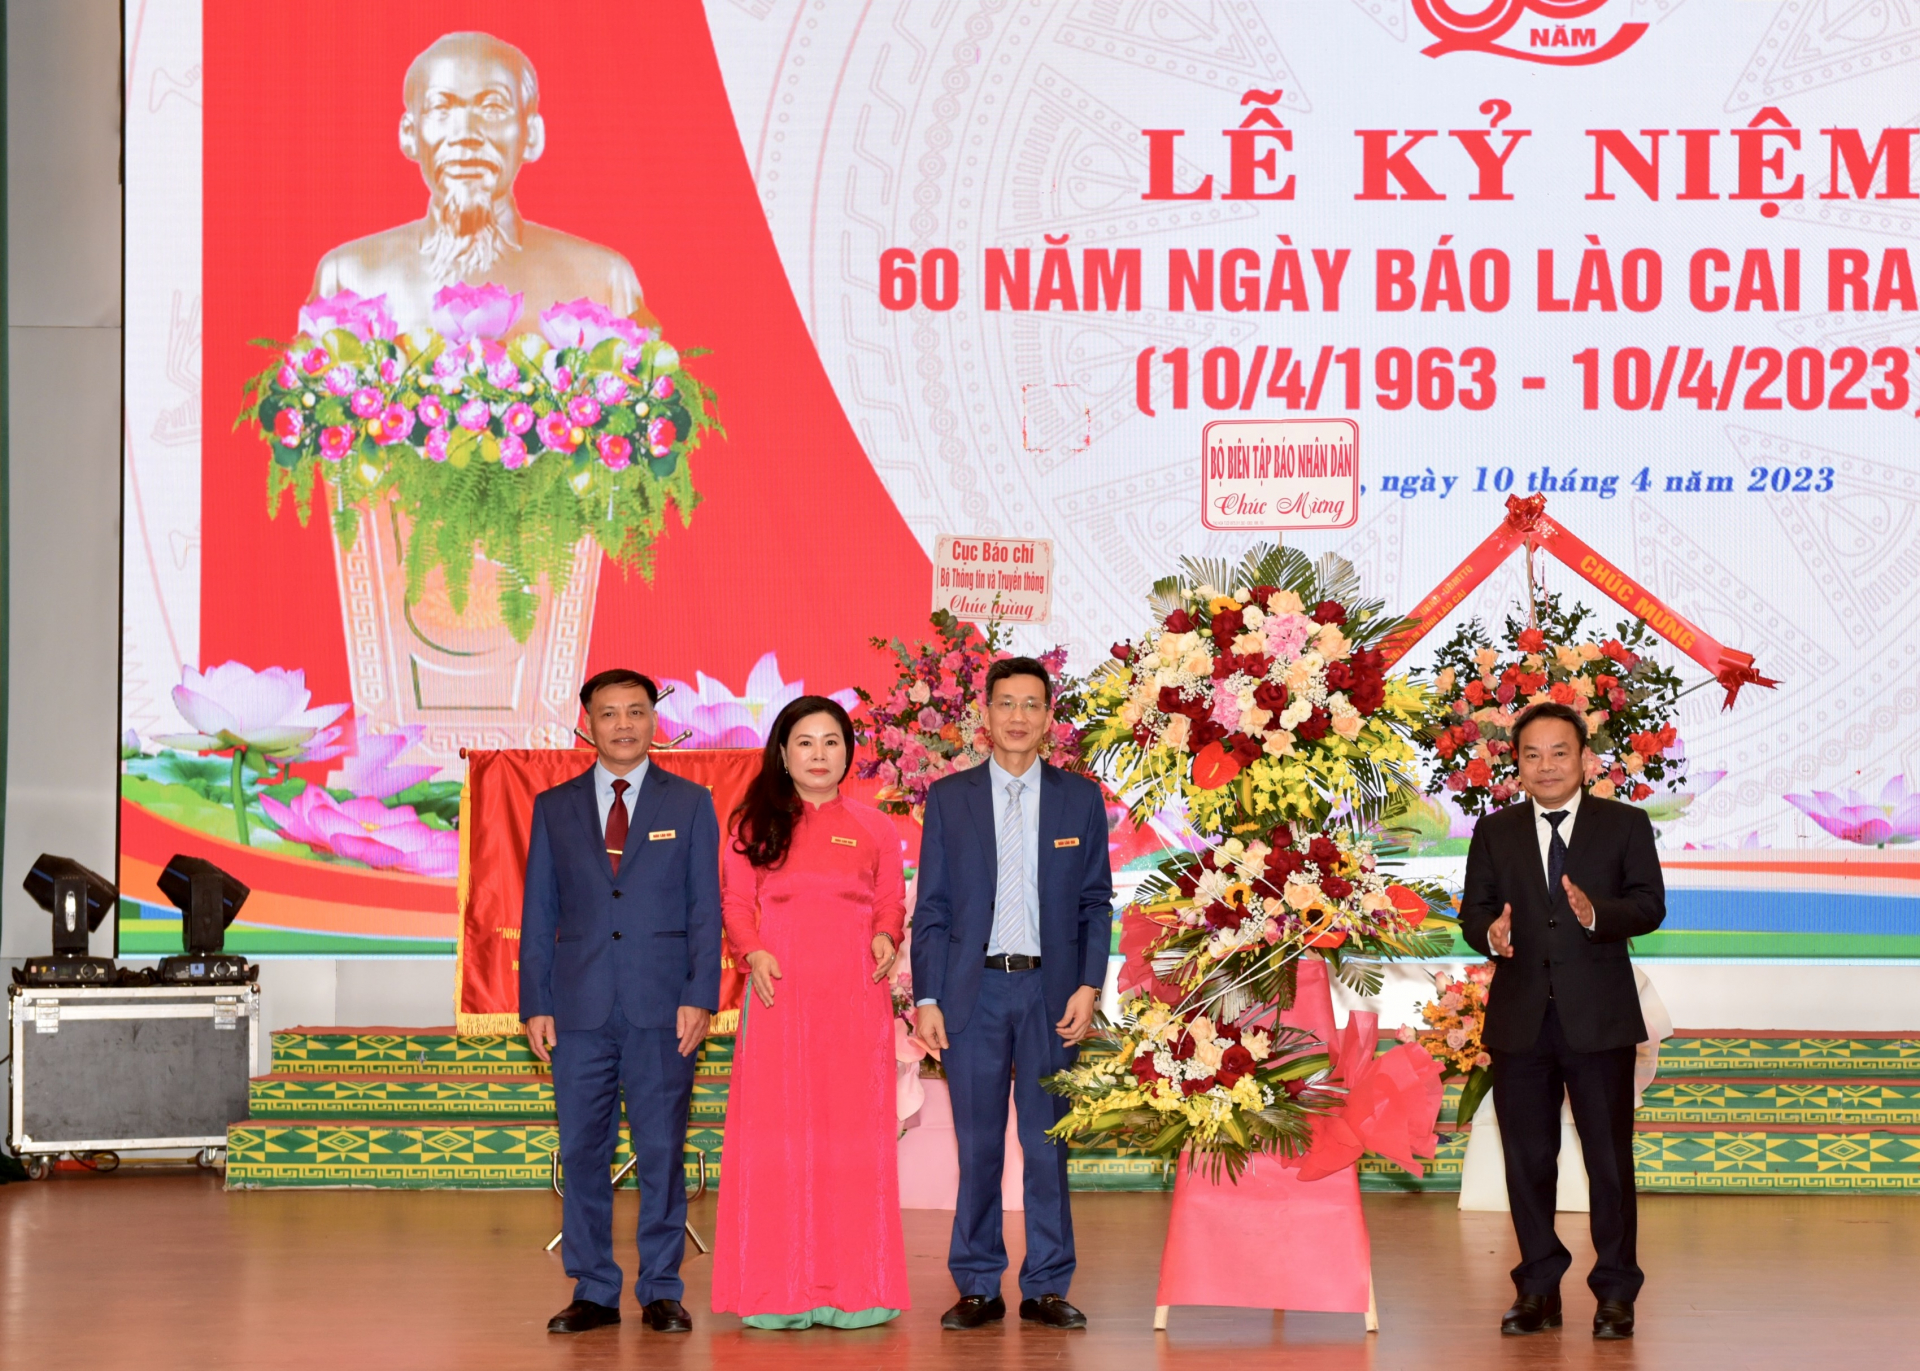 Phó Tổng Biên tập Báo Nhân dân Đinh Như Hoan tặng hoa chúc mừng Báo Lào Cai.